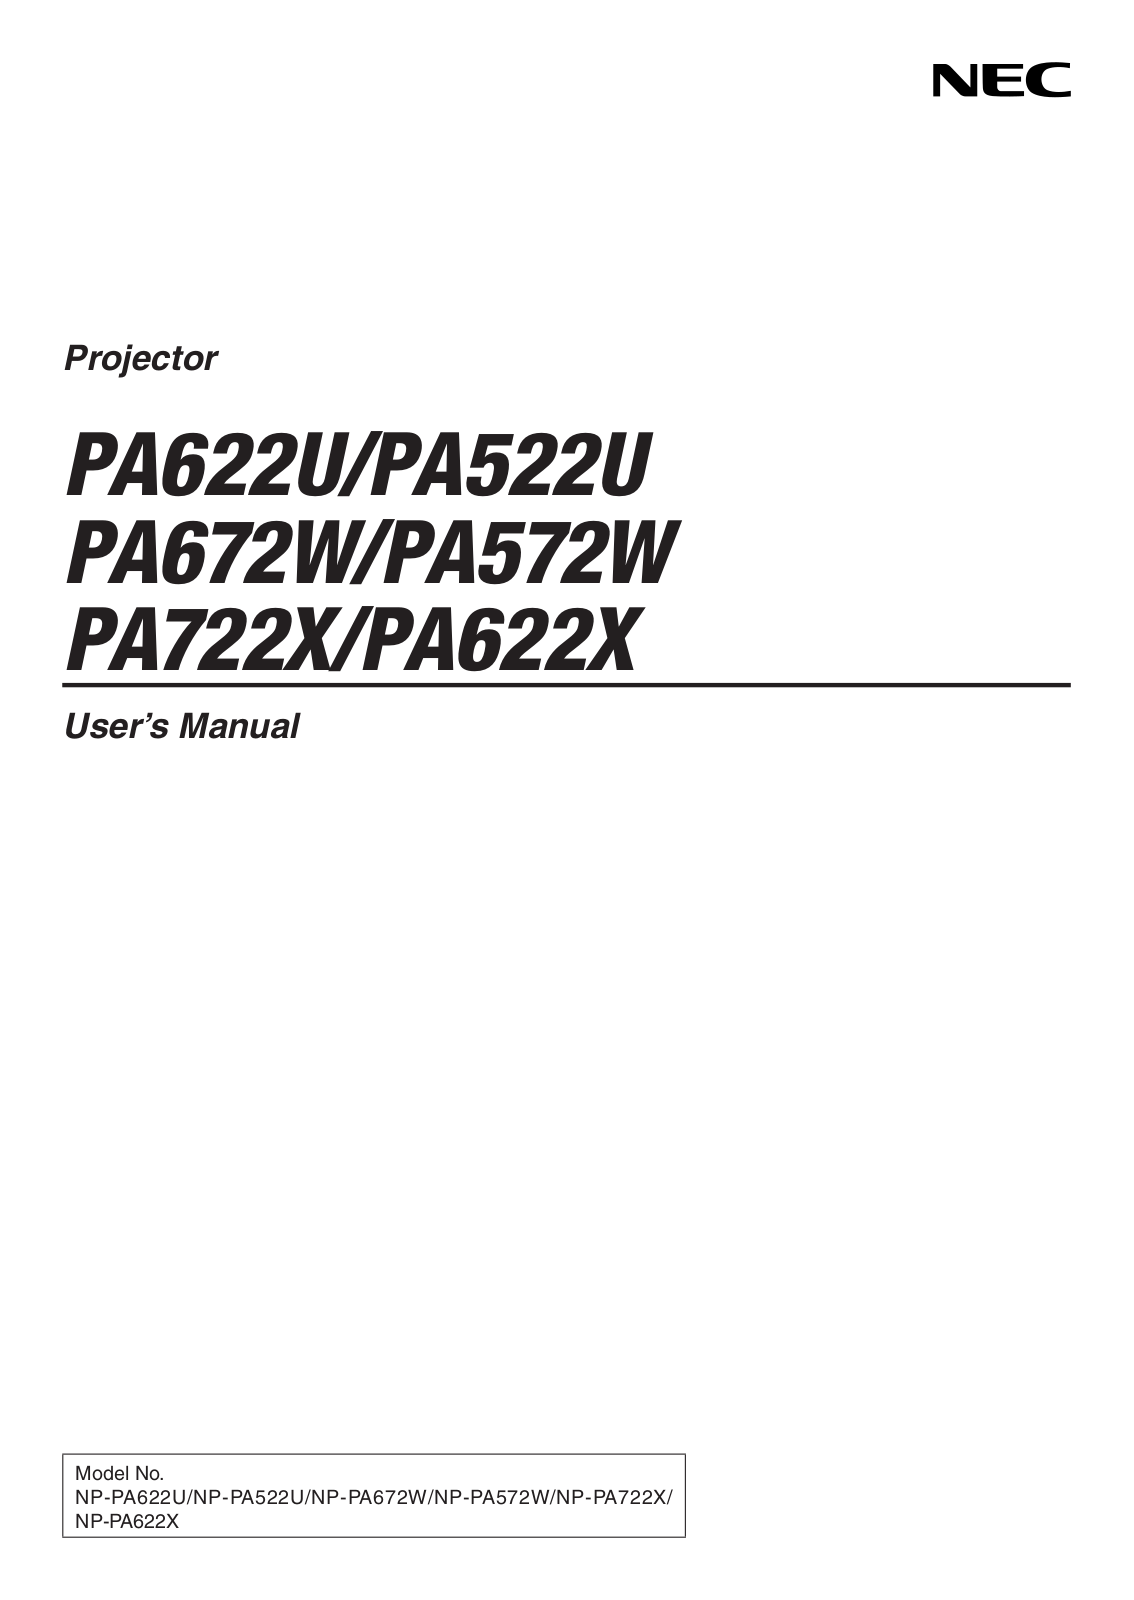 Nec PA622X, PA622U, PA672W, PA722X, PA522U User Manual